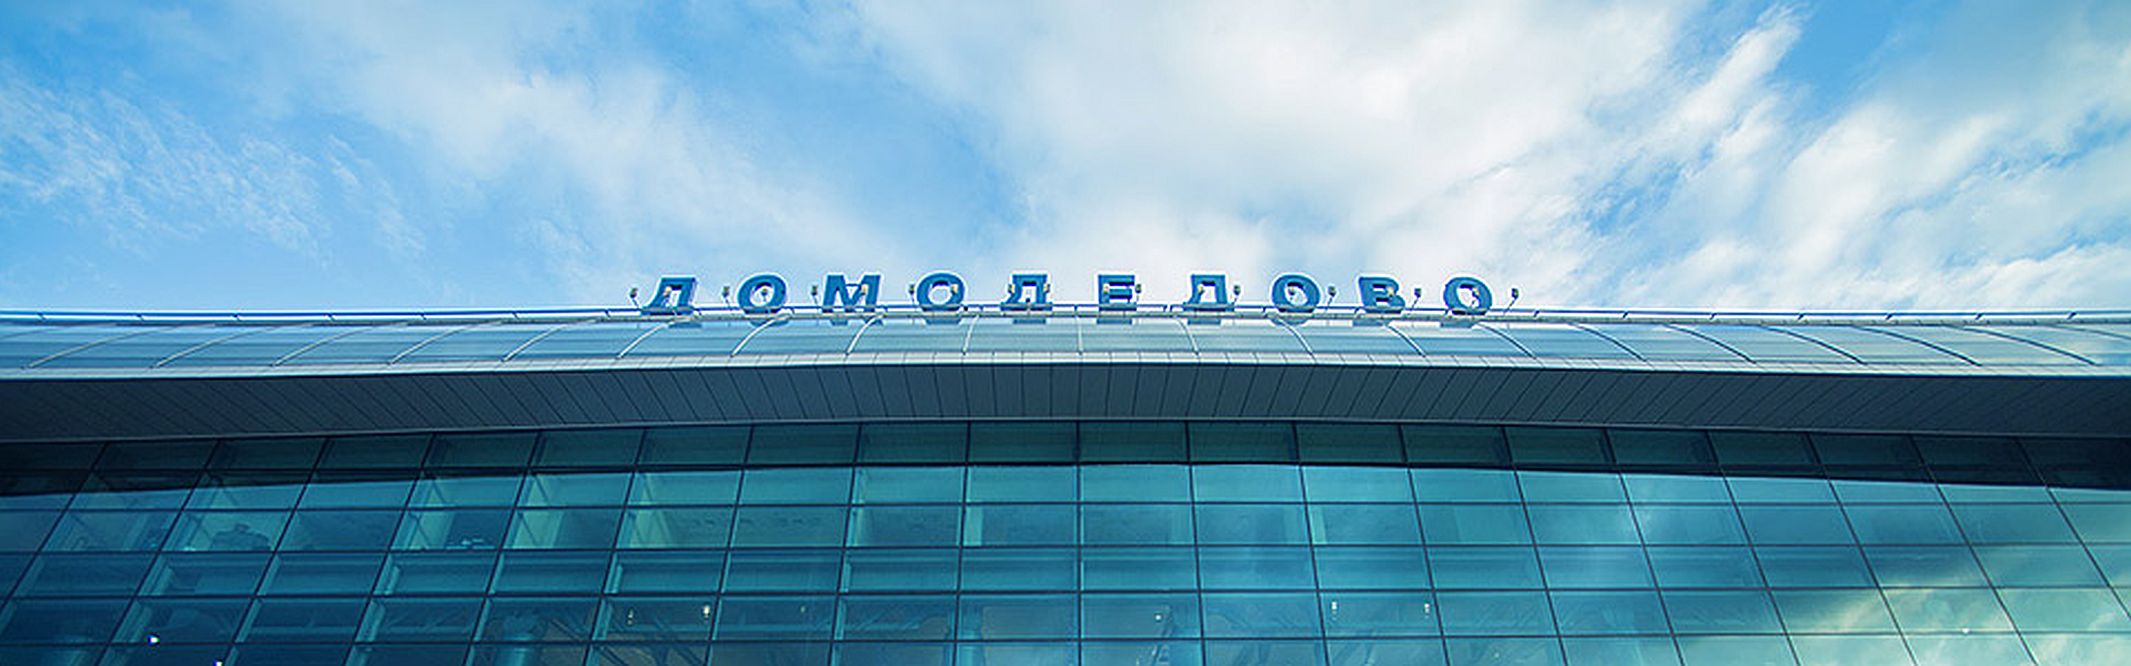 Экспертиза согласовала изменения проекта терминала "Аэроэкспресса" в Домодедово